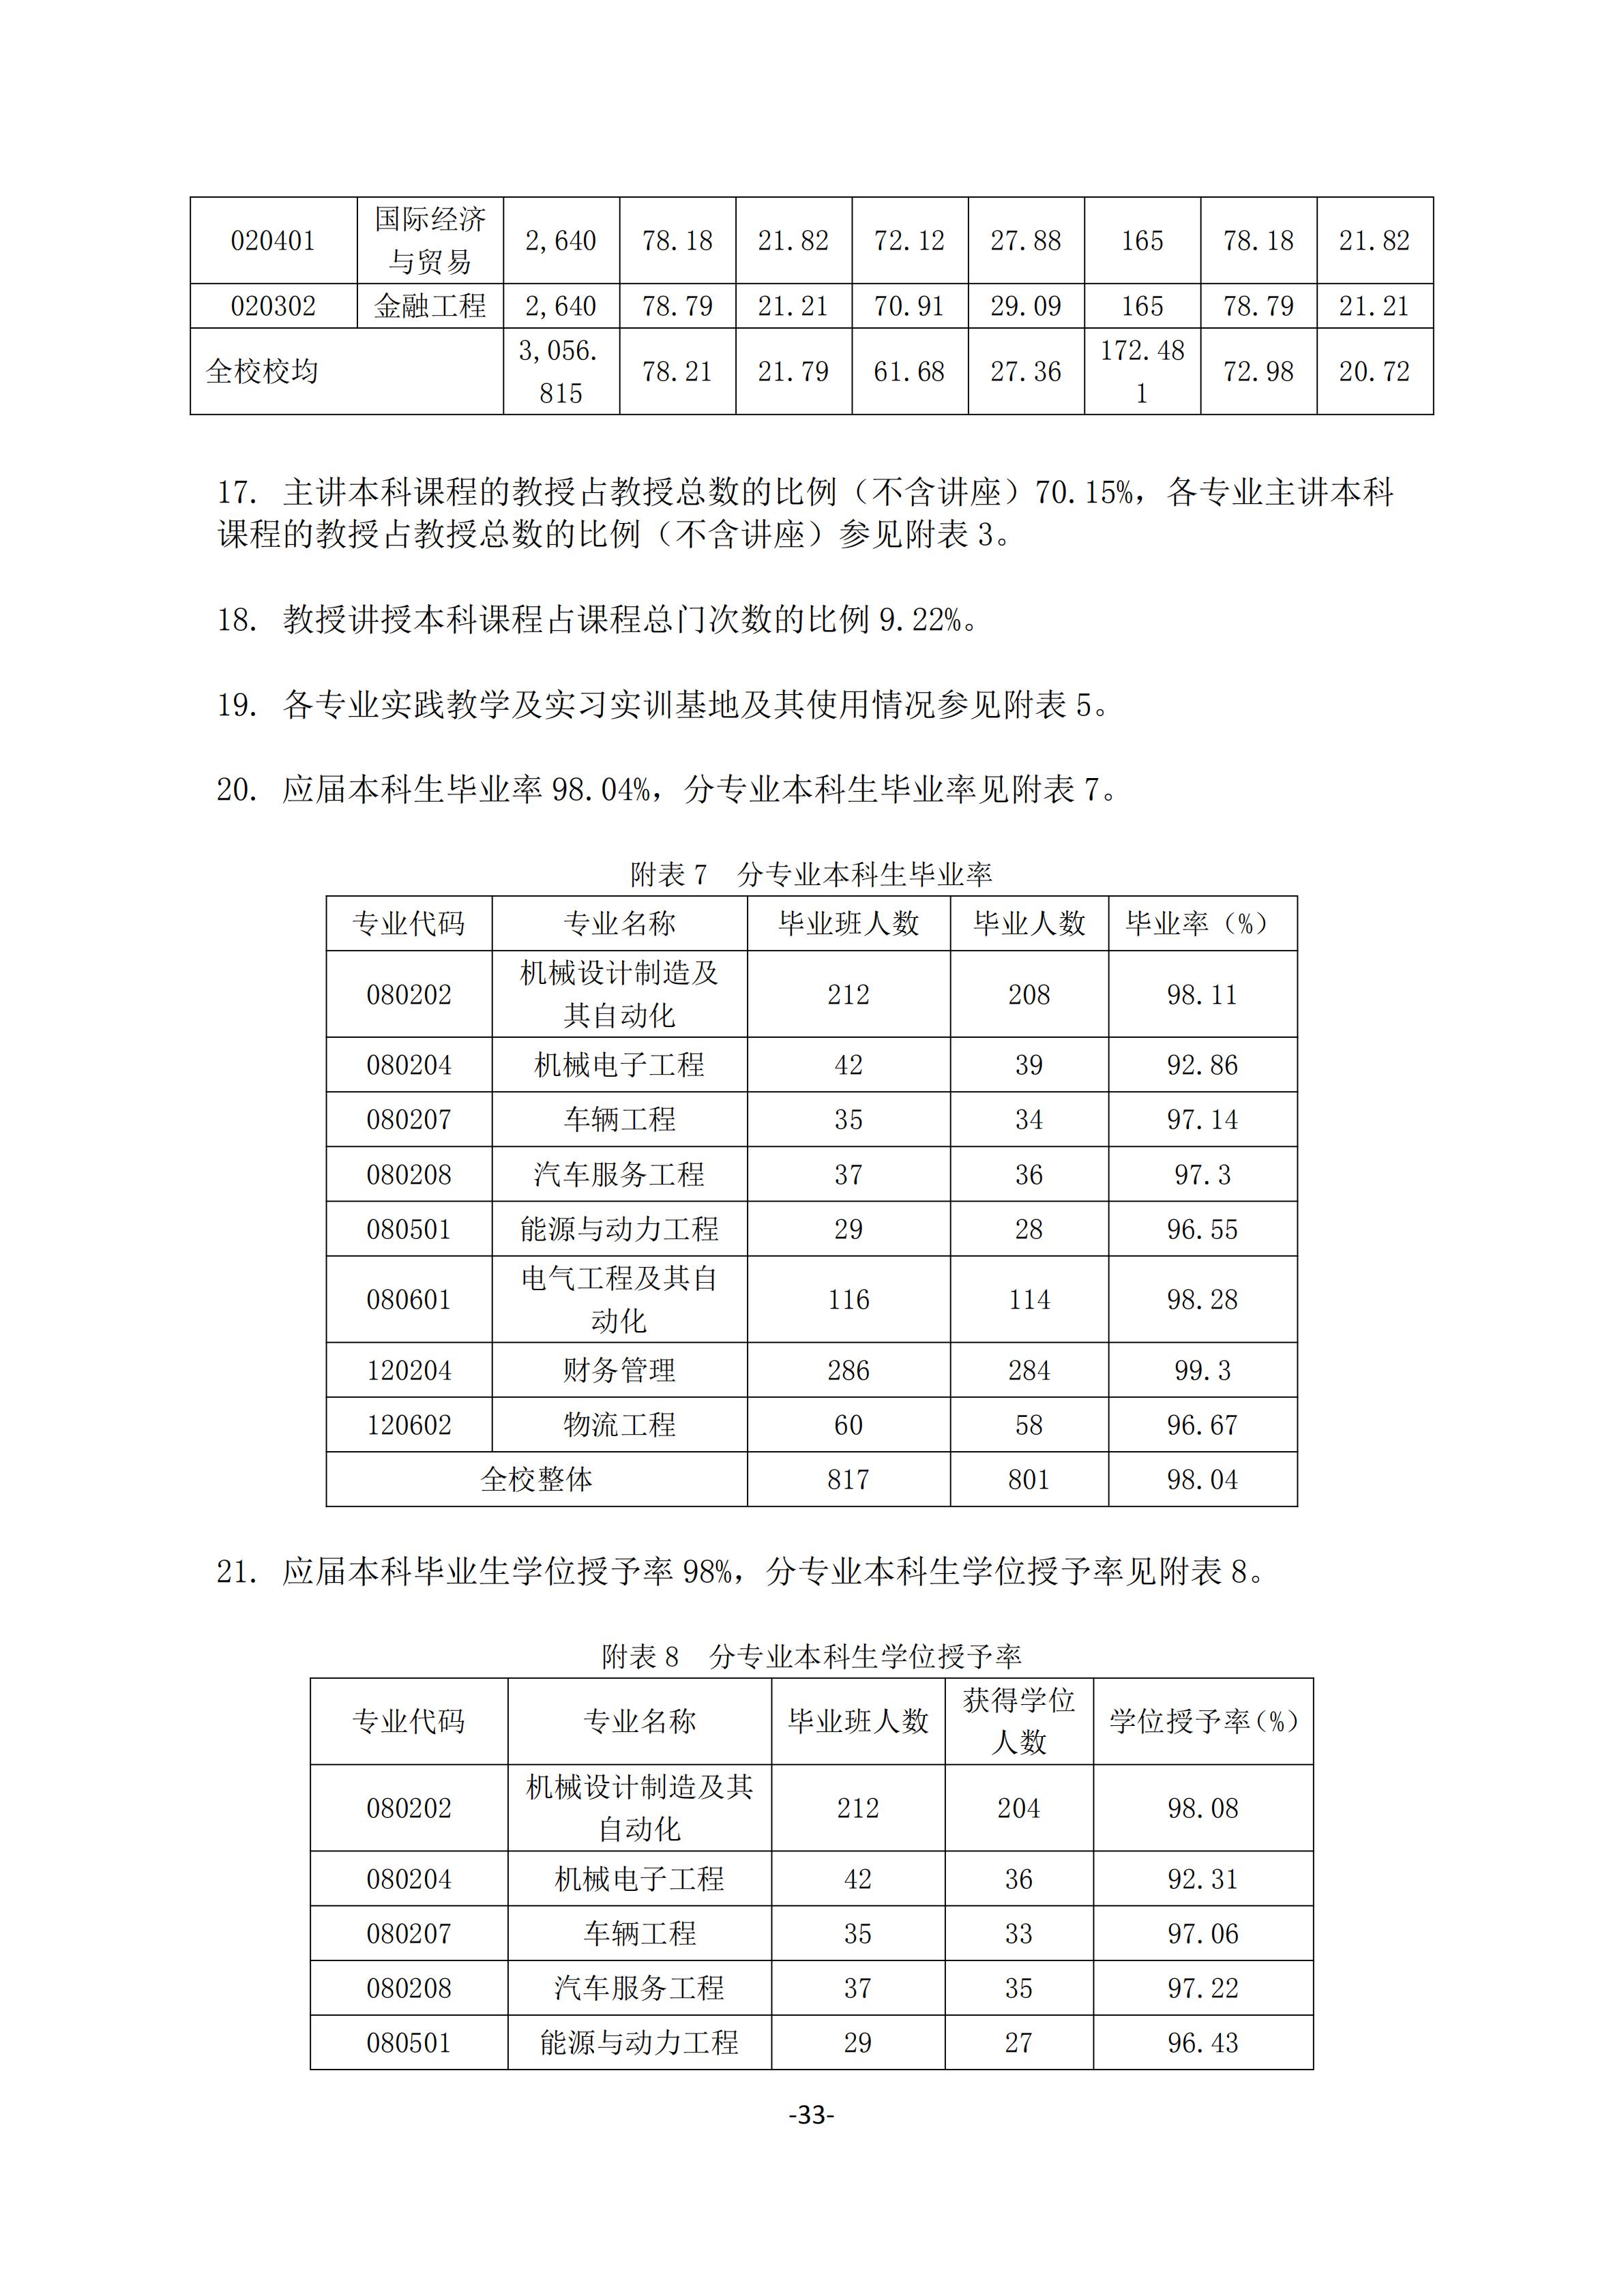 1.湖南交通工程学院2018-2019学年本科教学质量报告_32.jpg